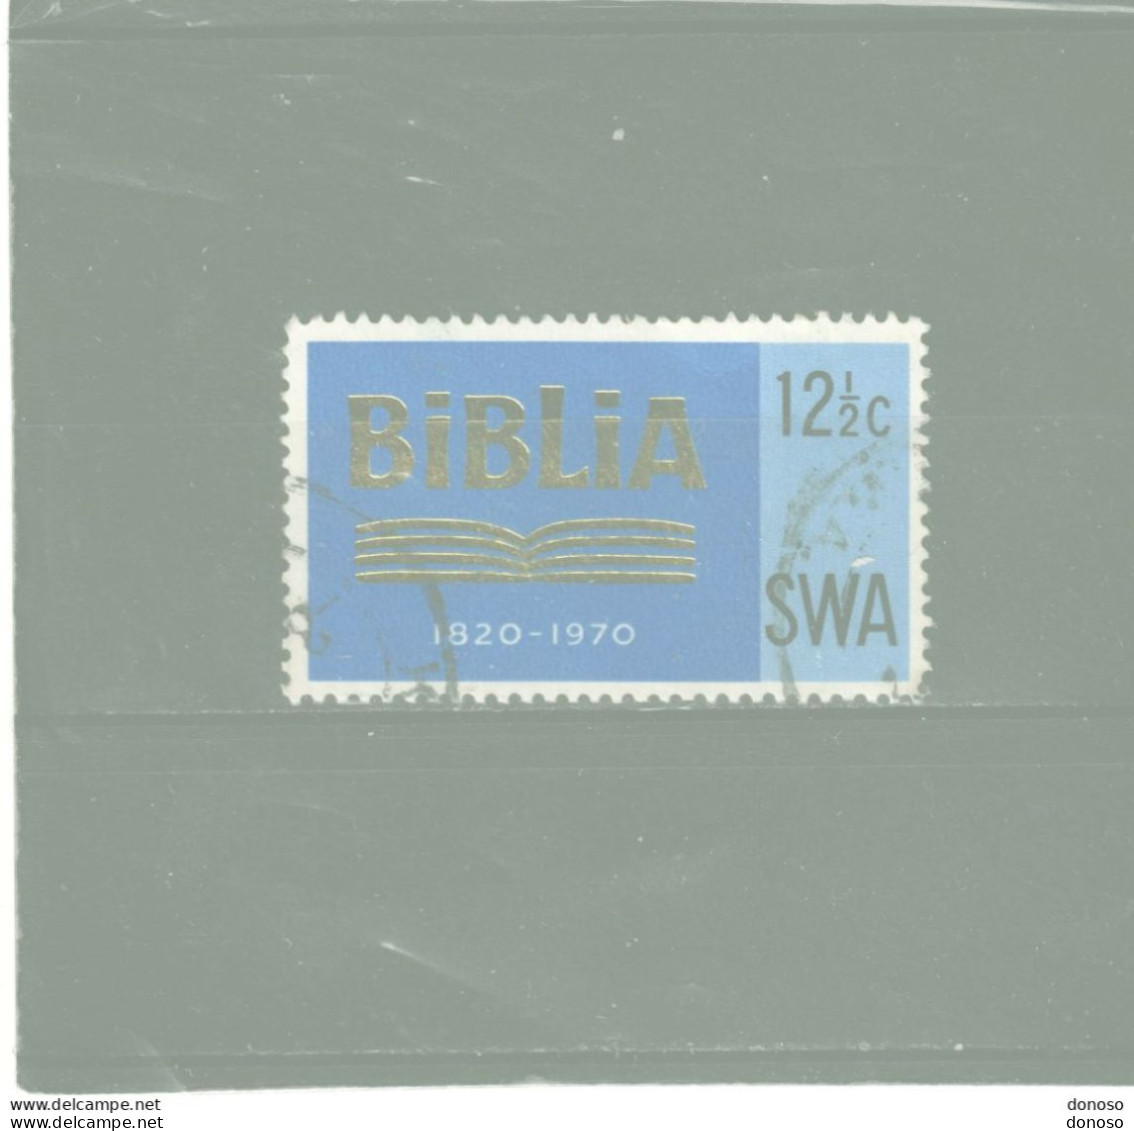 SWA SUD OUEST AFRICAIN 1970 SOCIETE BIBLIQUE Yvert 303, Michel 359  Oblitéré Cote Yv 33 Euros - África Del Sudoeste (1923-1990)